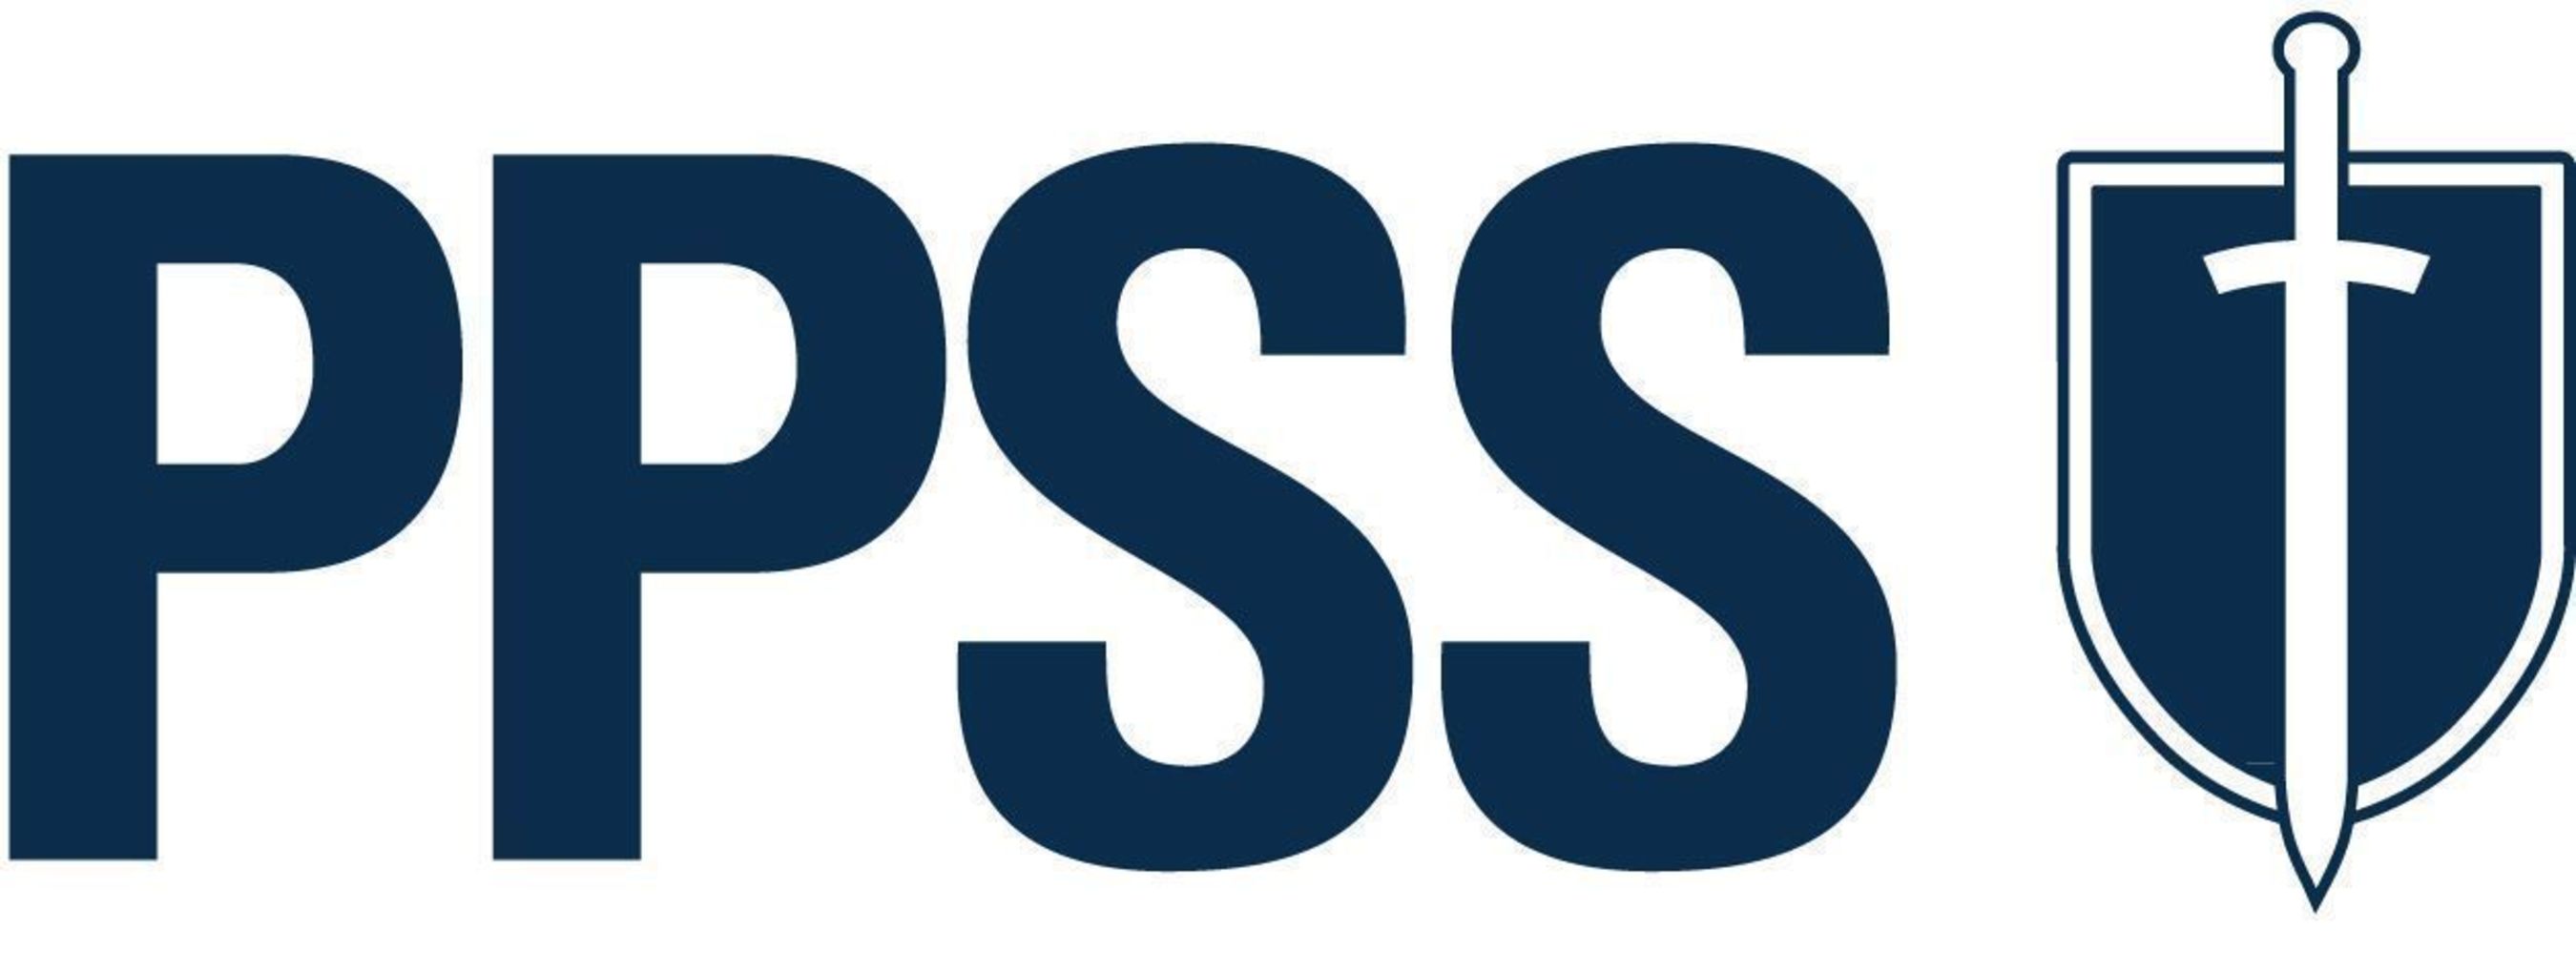 PPSS Logo (PRNewsFoto/PPSS Group)